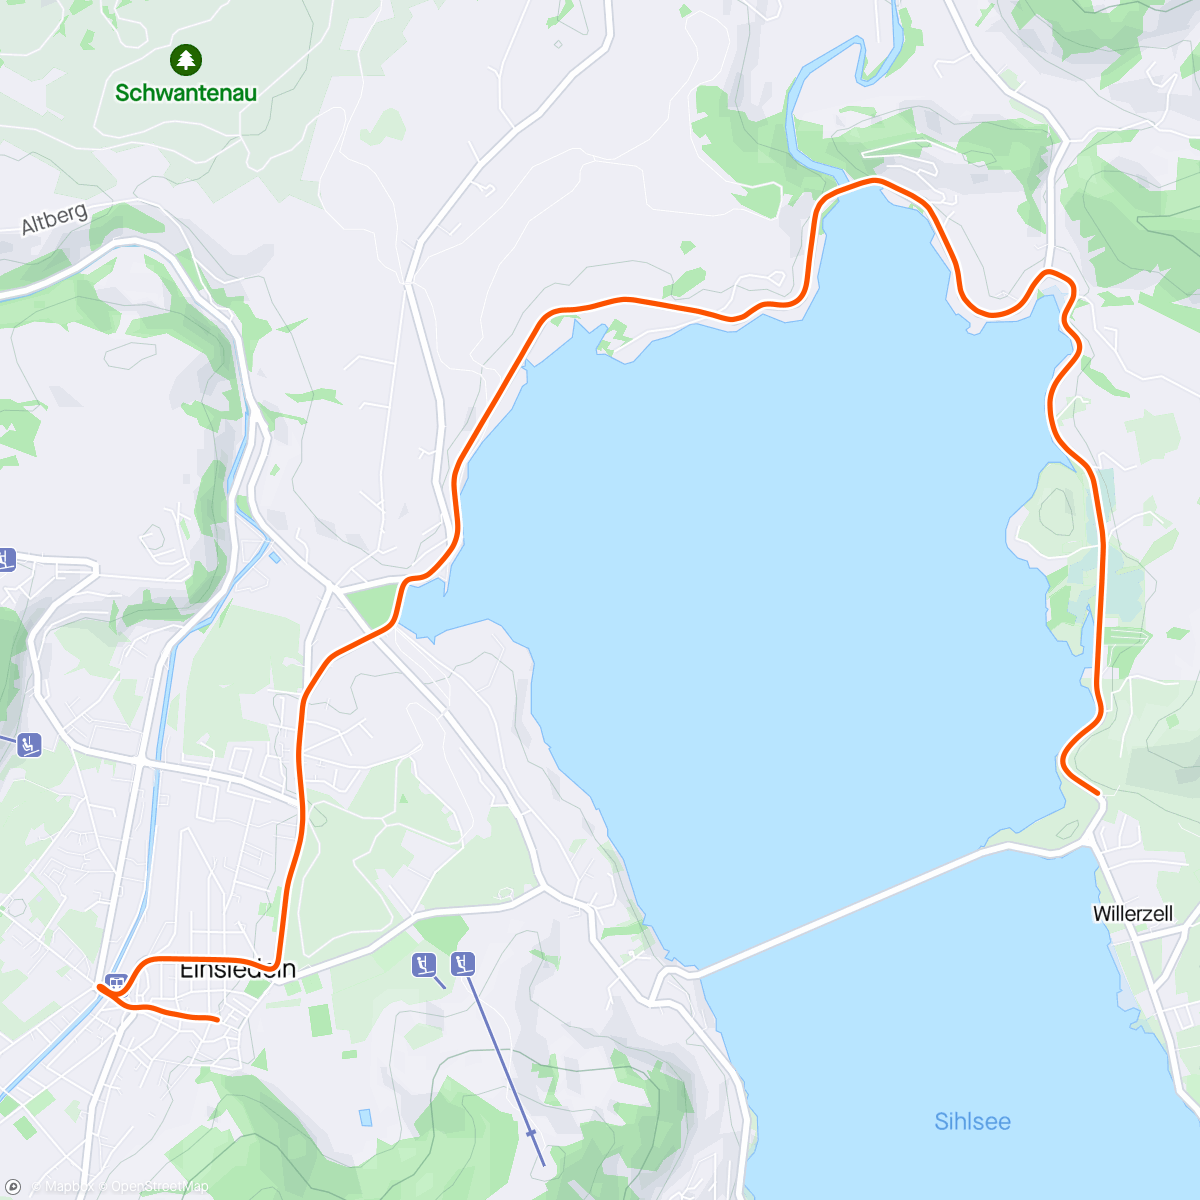 「ROUVY - Stage 1 (Einsiedeln) - Tour de Suisse 2023」活動的地圖